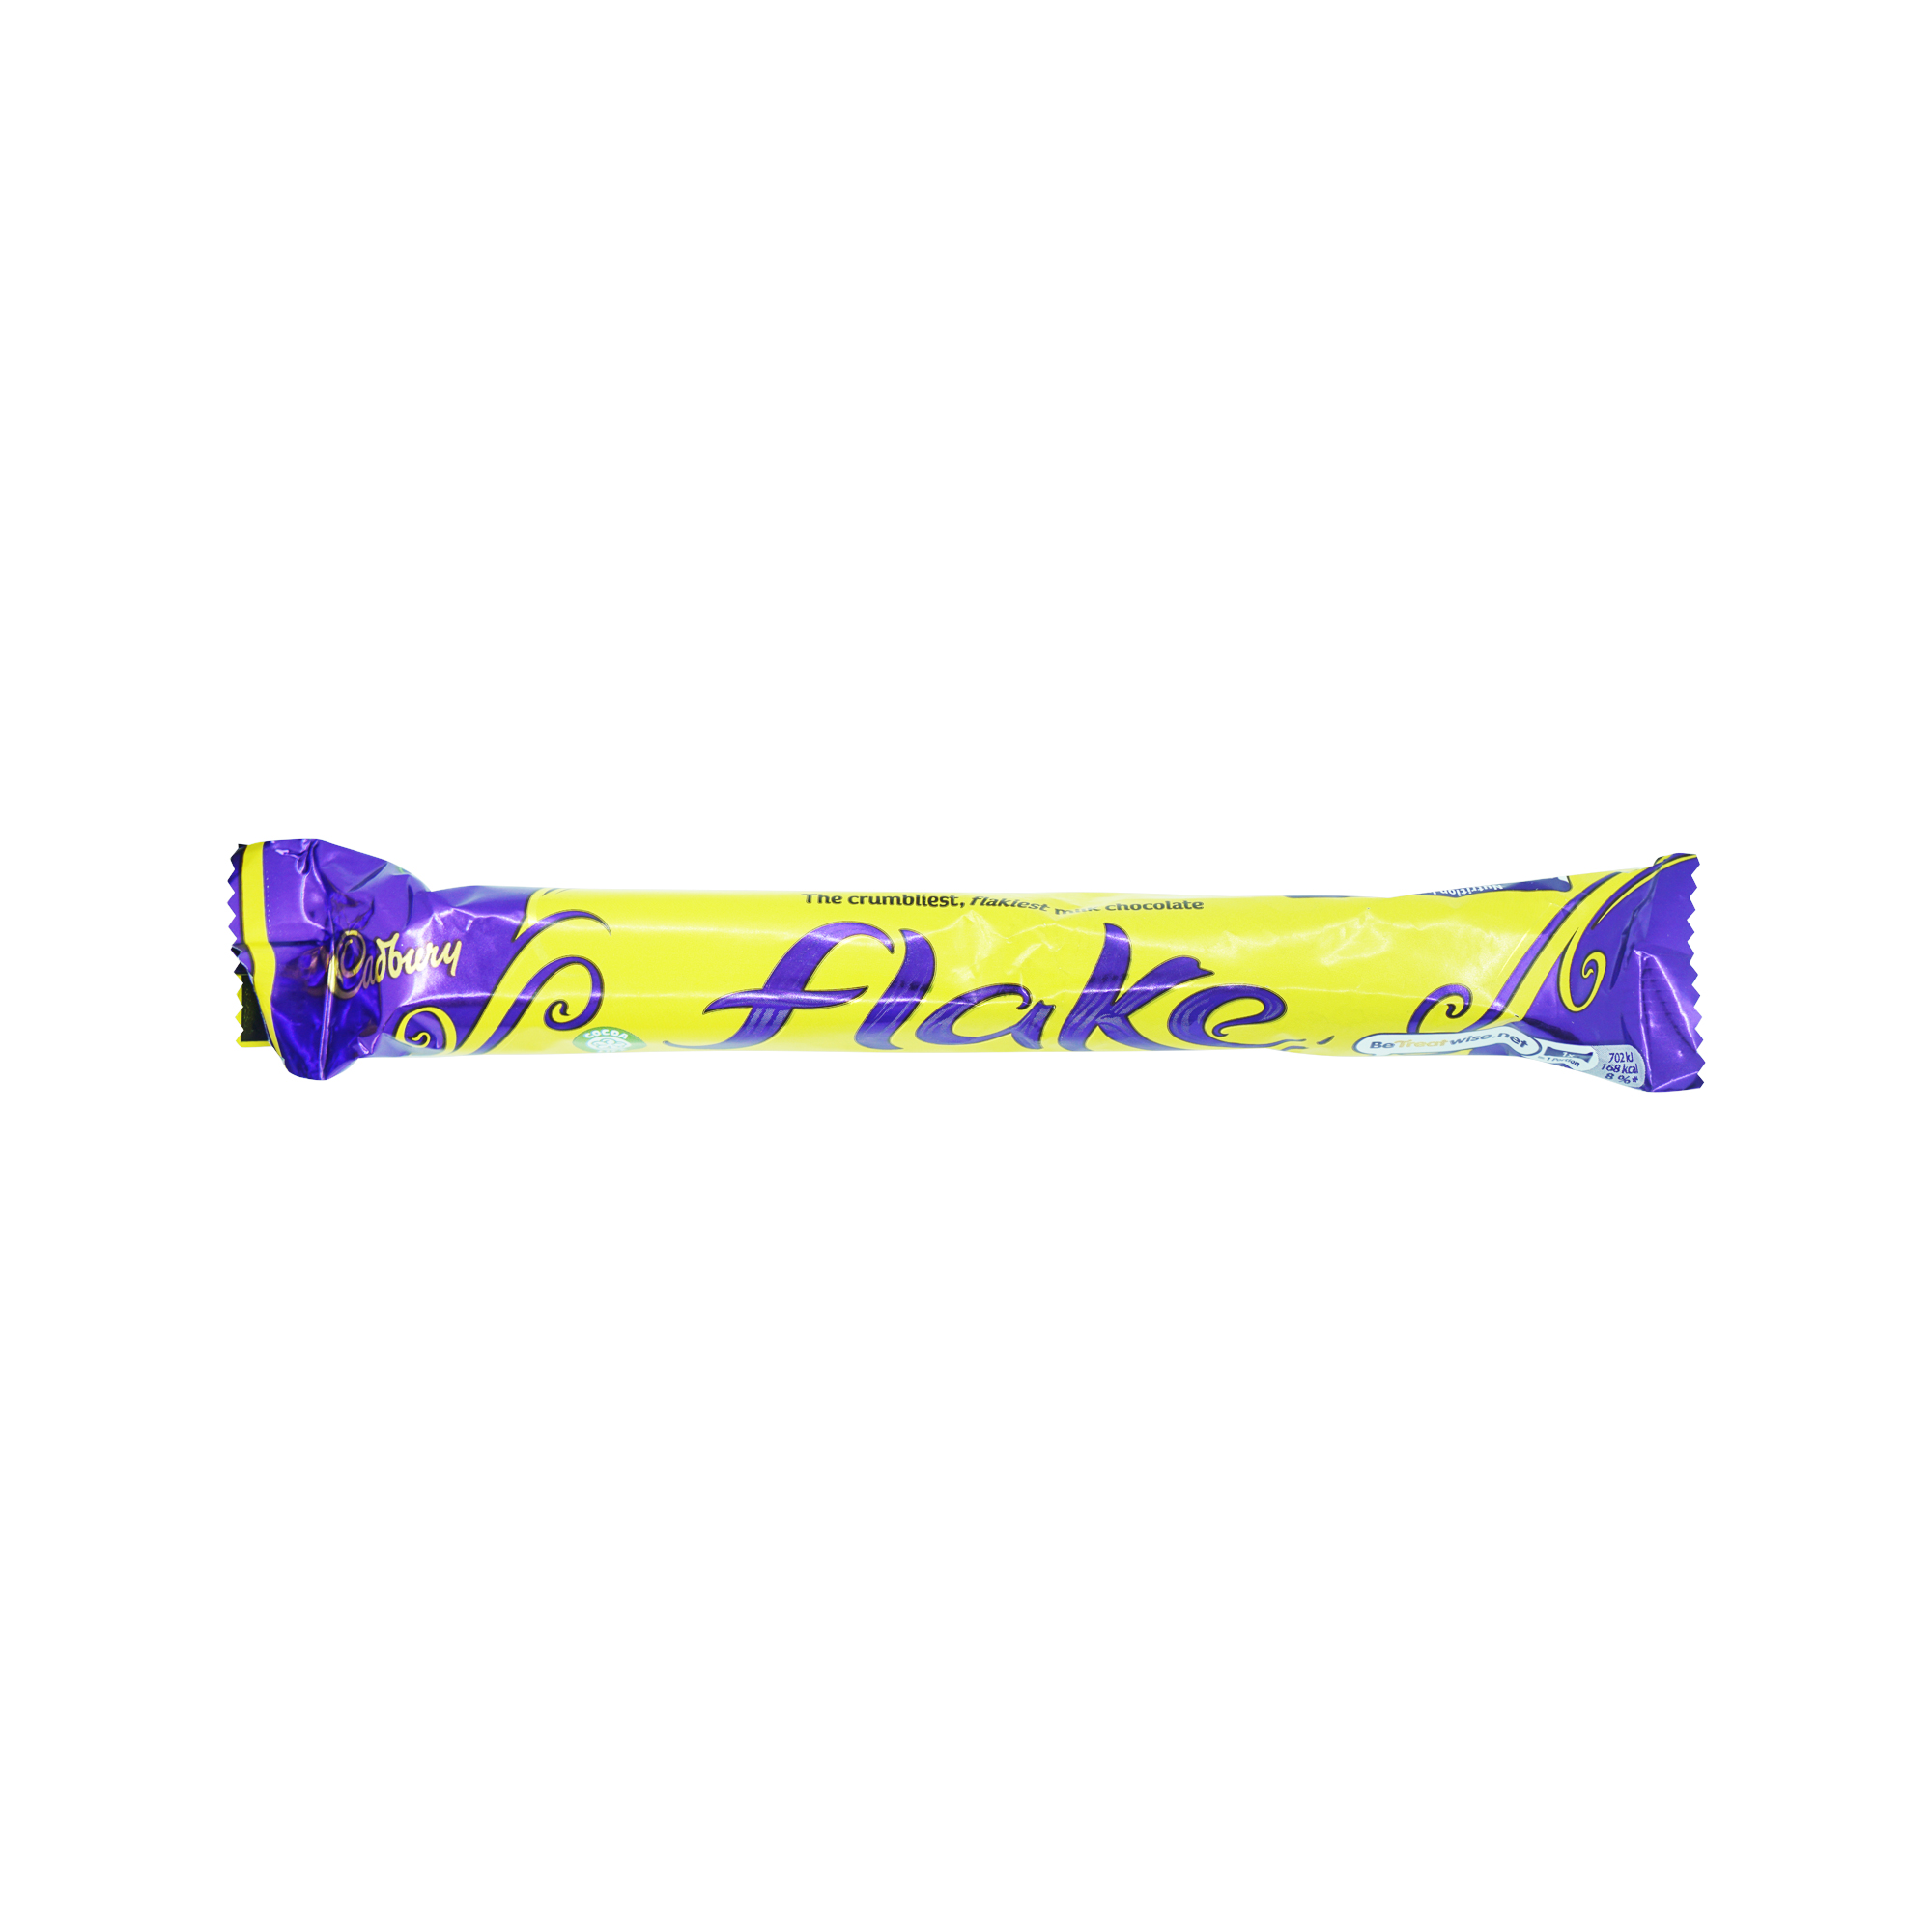 Cadbury Flake (32g)